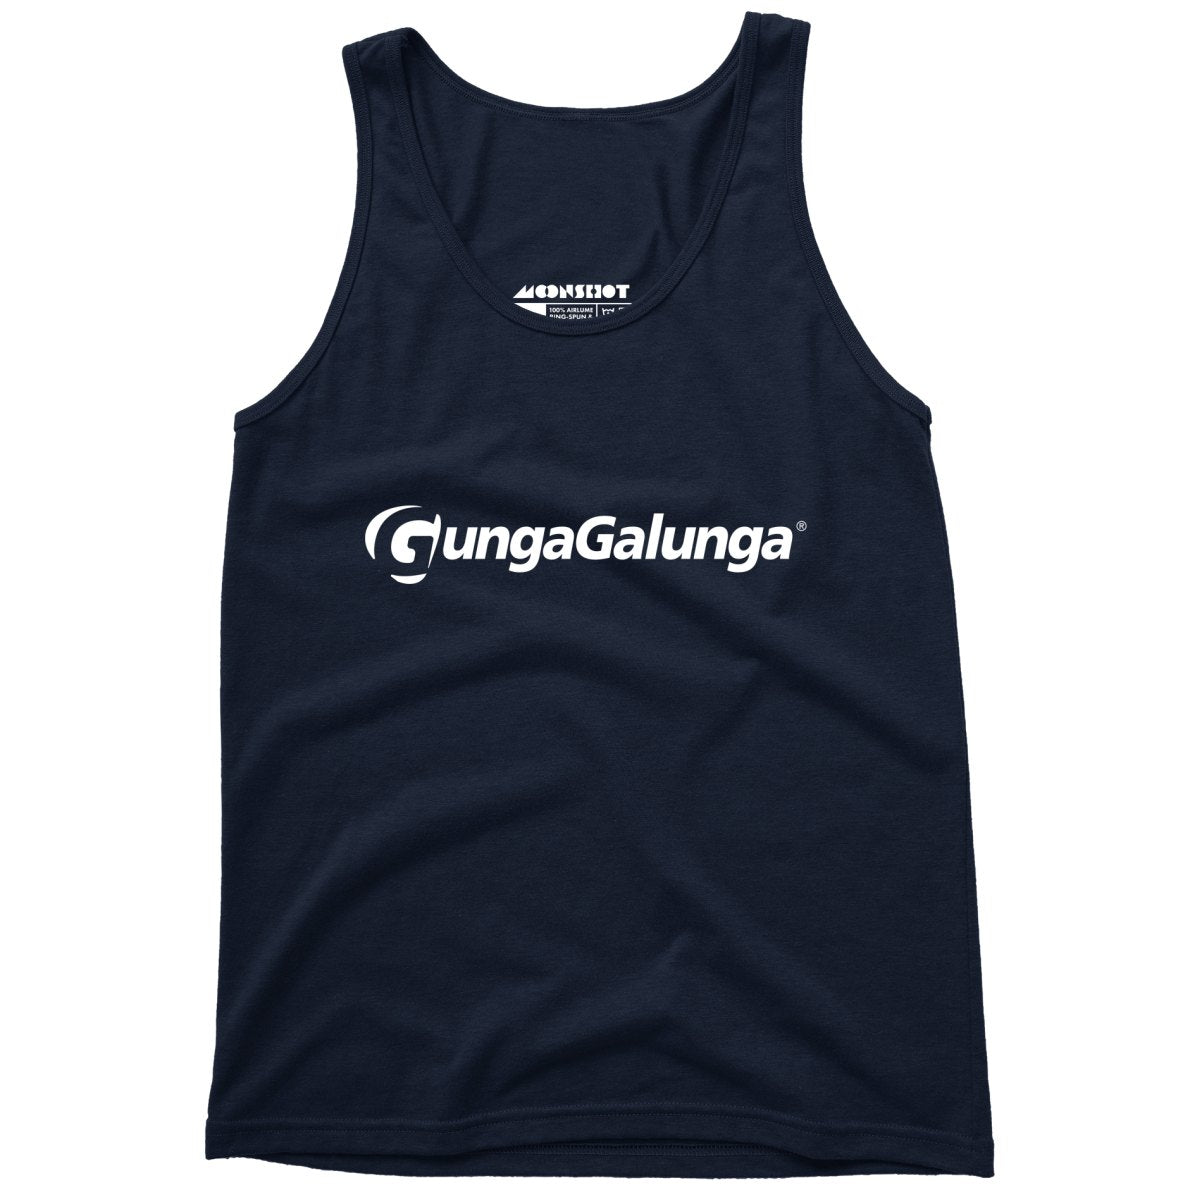 Gunga Galunga - Unisex Tank Top